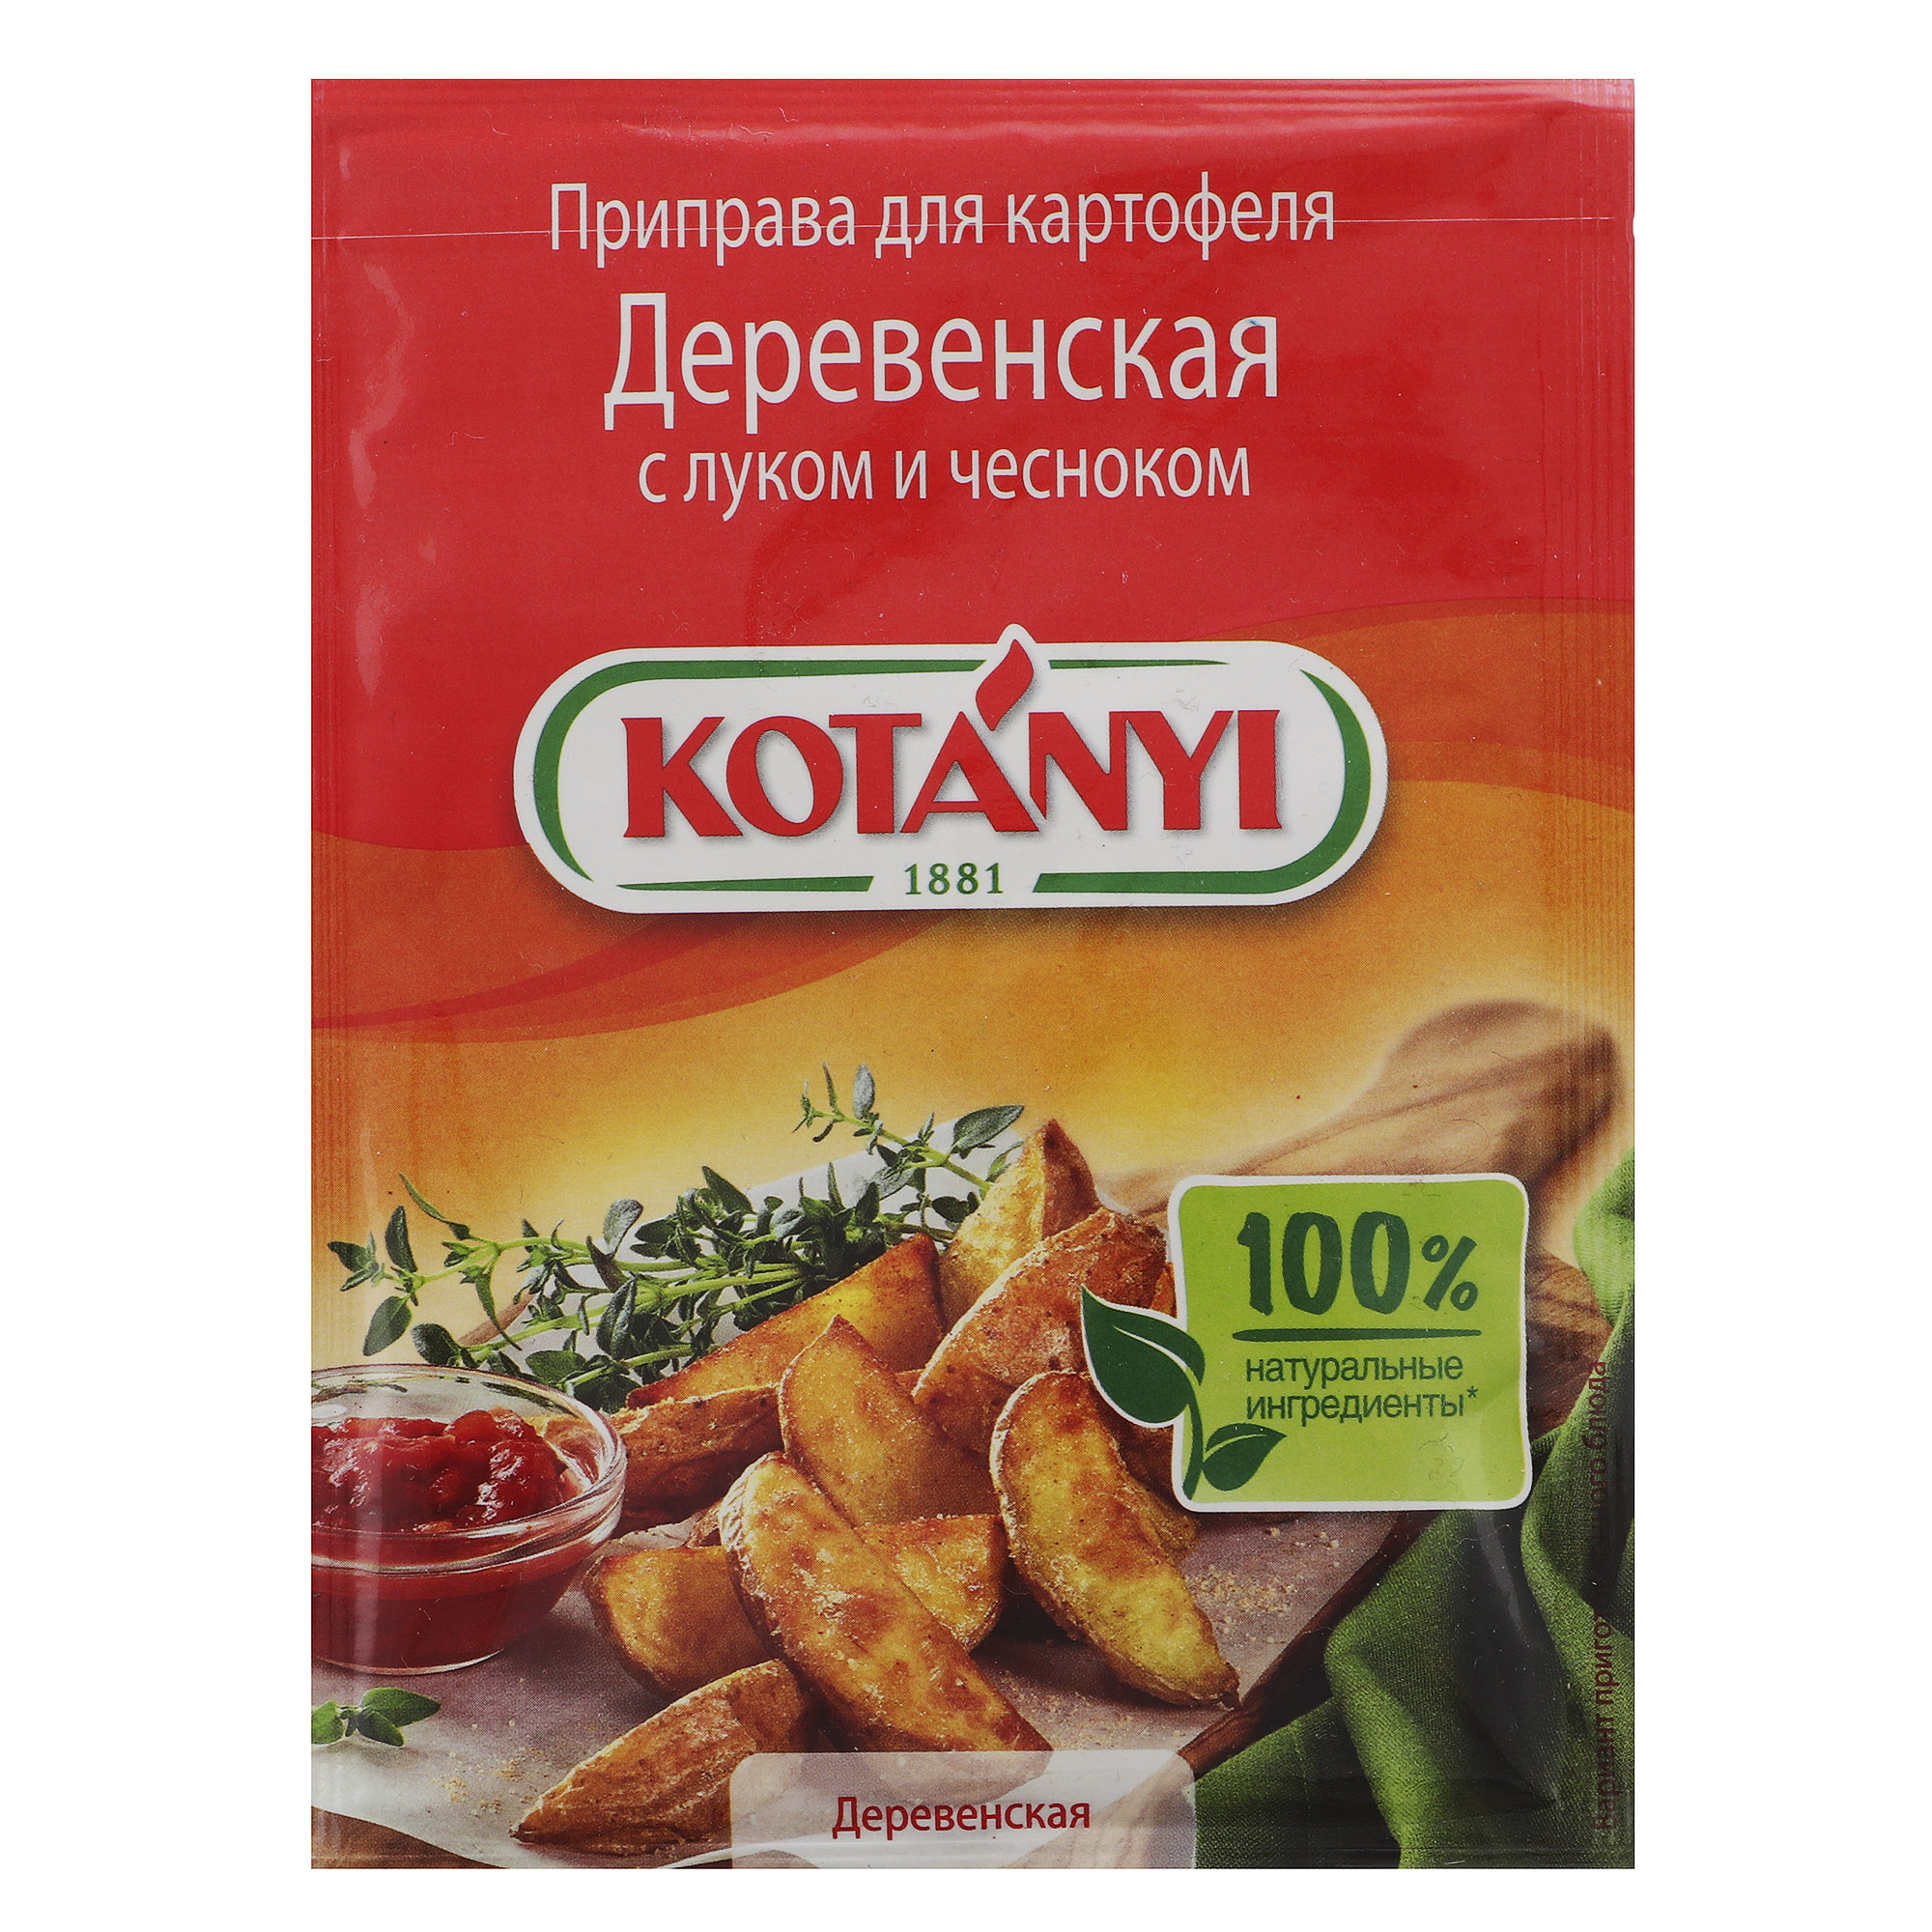 Приправа Kotanyi Деревенская для картофеля с луком и чесноком 20 г смесь kotanyi тоскана 20 г